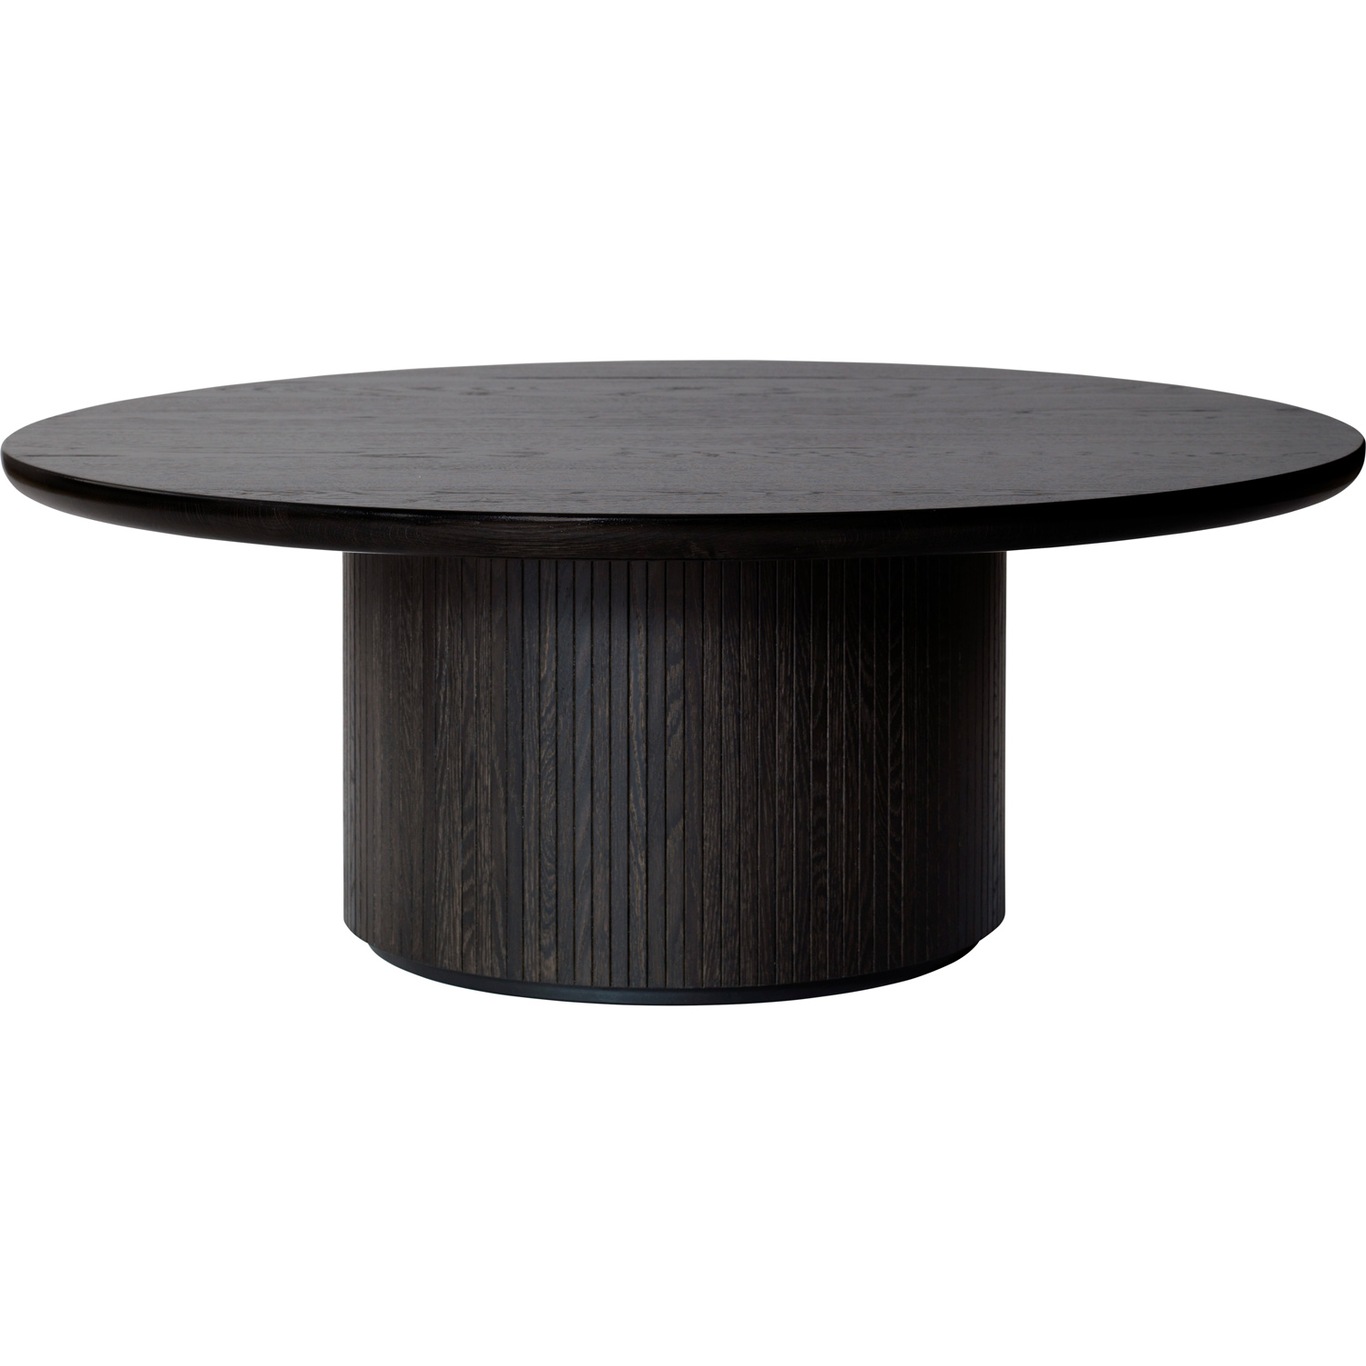 Moon Coffee Table Round Ø150 H45, Brown Black Oak Veneer